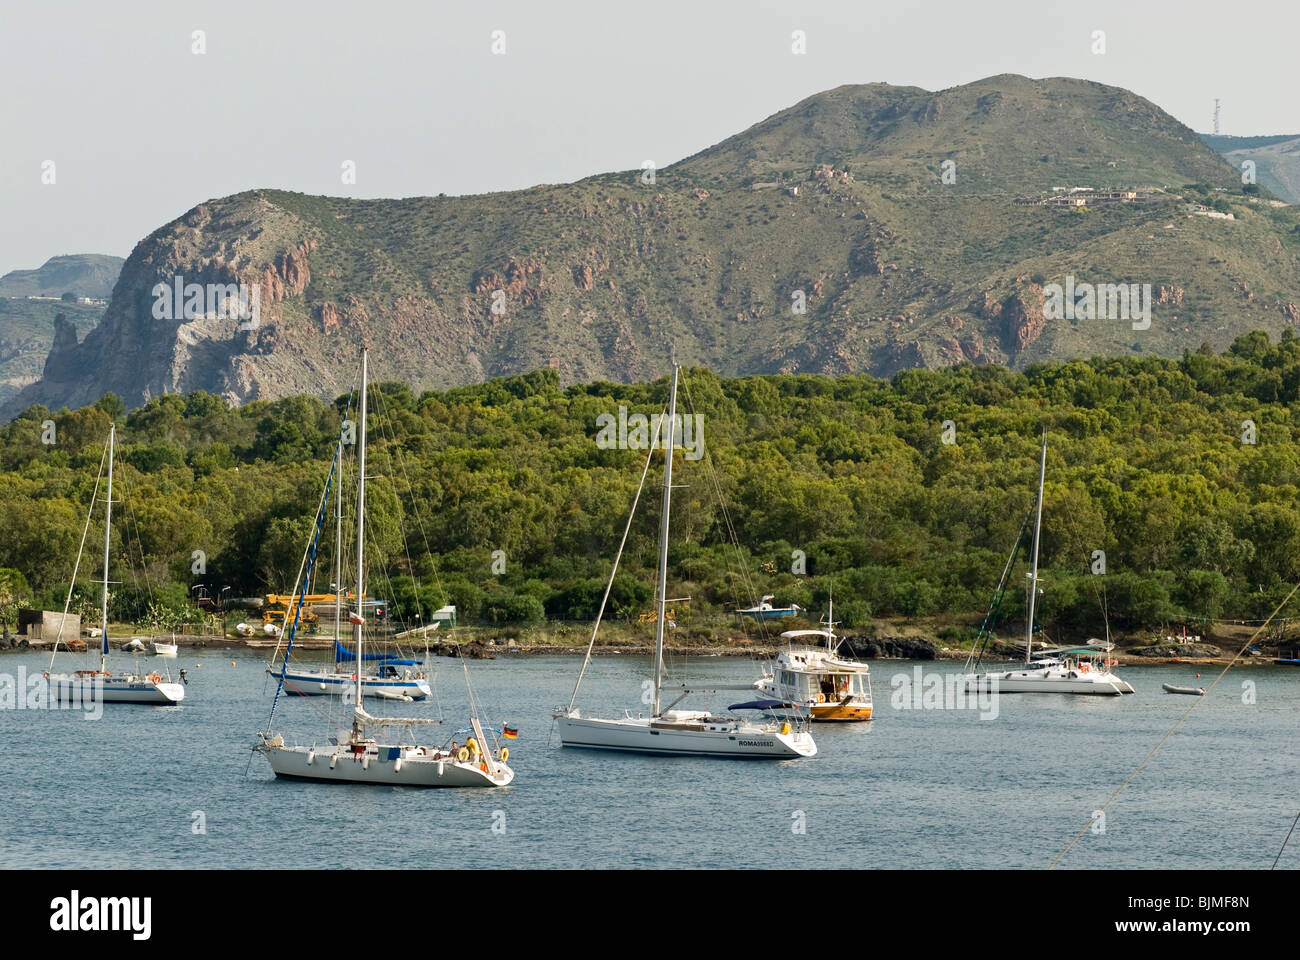 Italien, Sizilien, Liparischen Inseln, Insel Vulcano, Segelboote in der Bucht Stockfoto